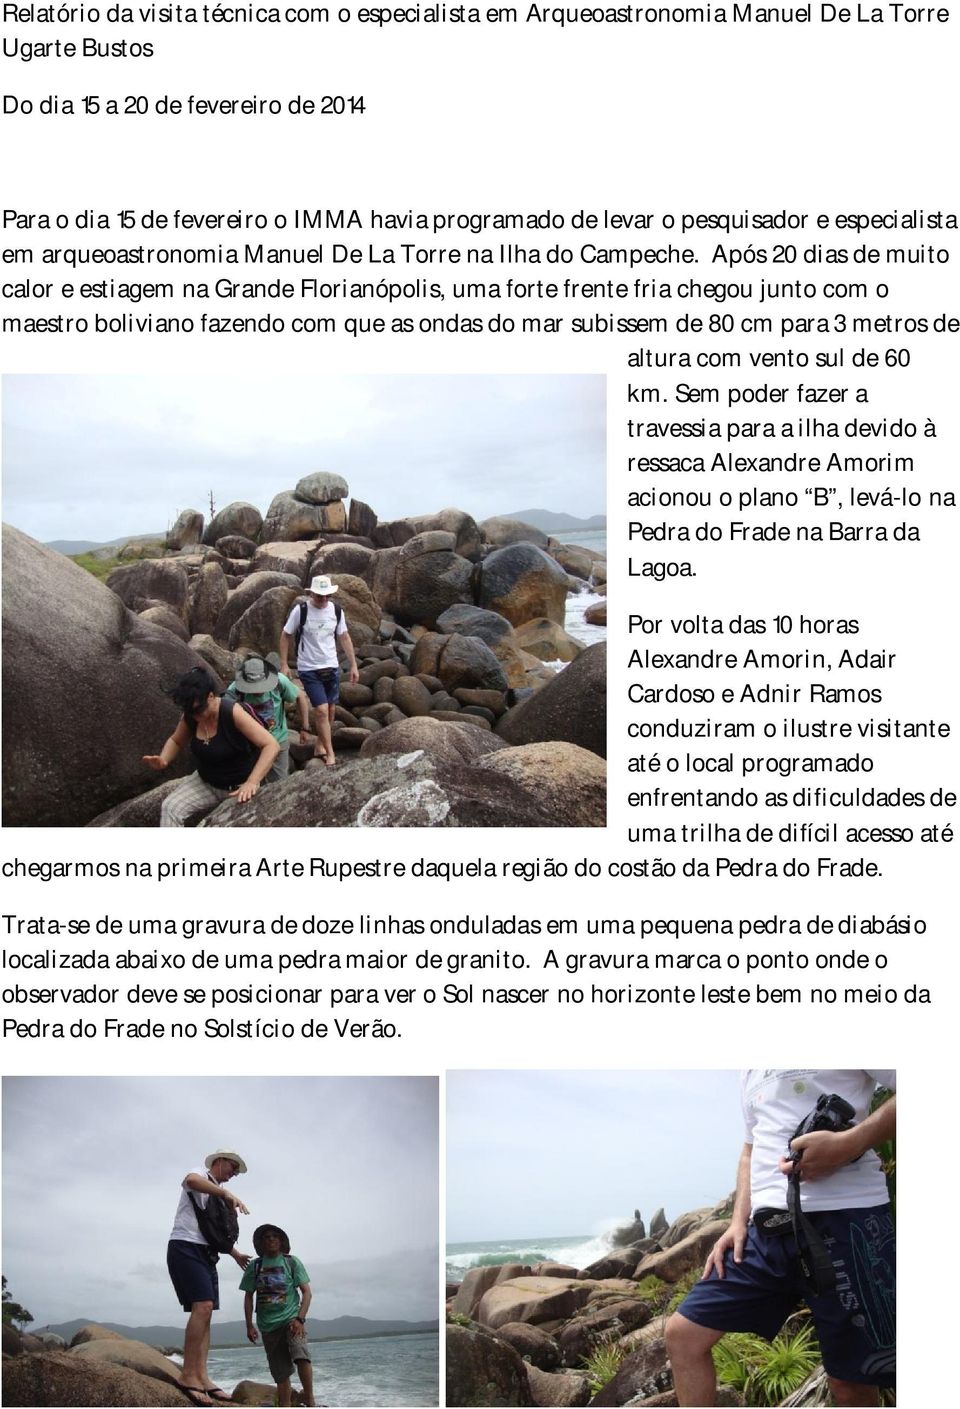 Após 20 dias de muito calor e estiagem na Grande Florianópolis, uma forte frente fria chegou junto com o maestro boliviano fazendo com que as ondas do mar subissem de 80 cm para 3 metros de altura